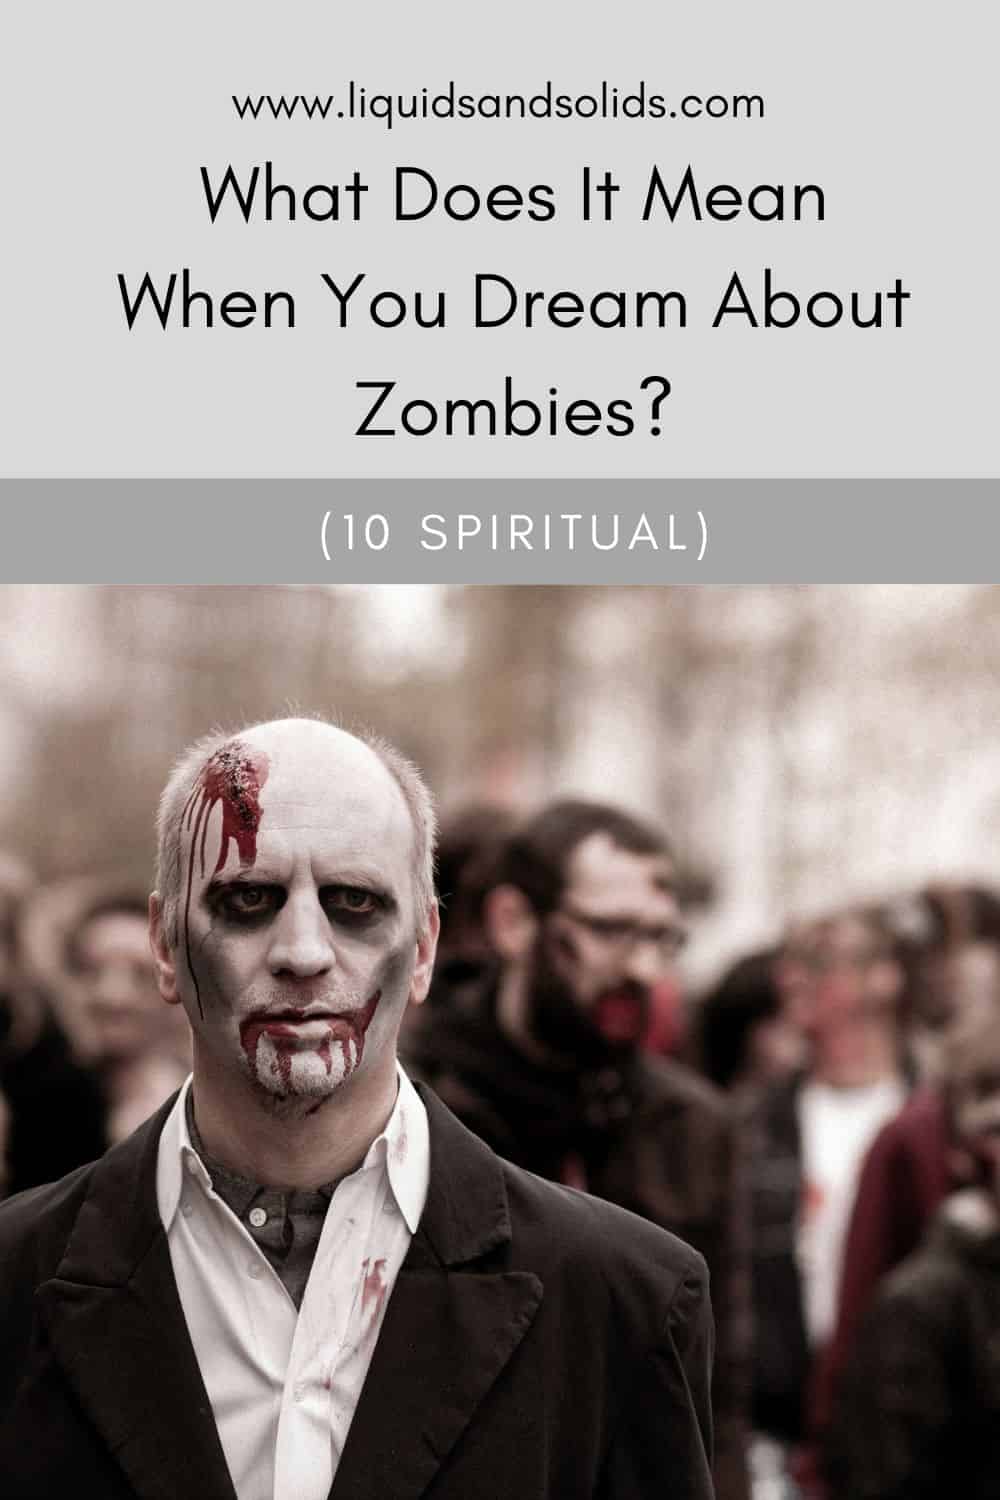  Mit jelent, ha zombikról álmodsz? (10 spirituális jelentés)